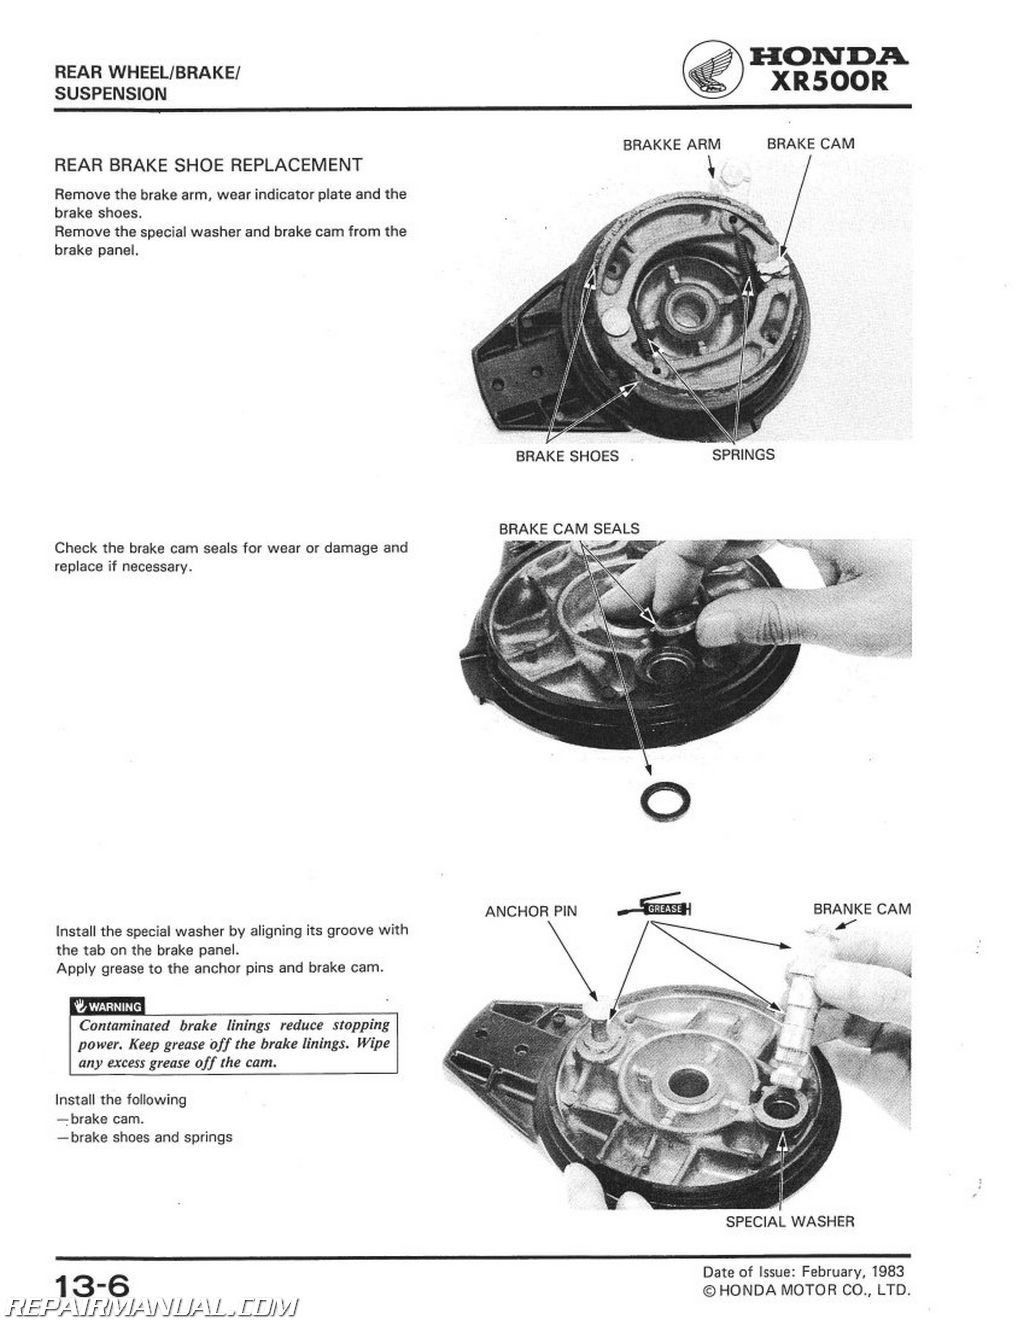 1982 Honda xr500r repair manual